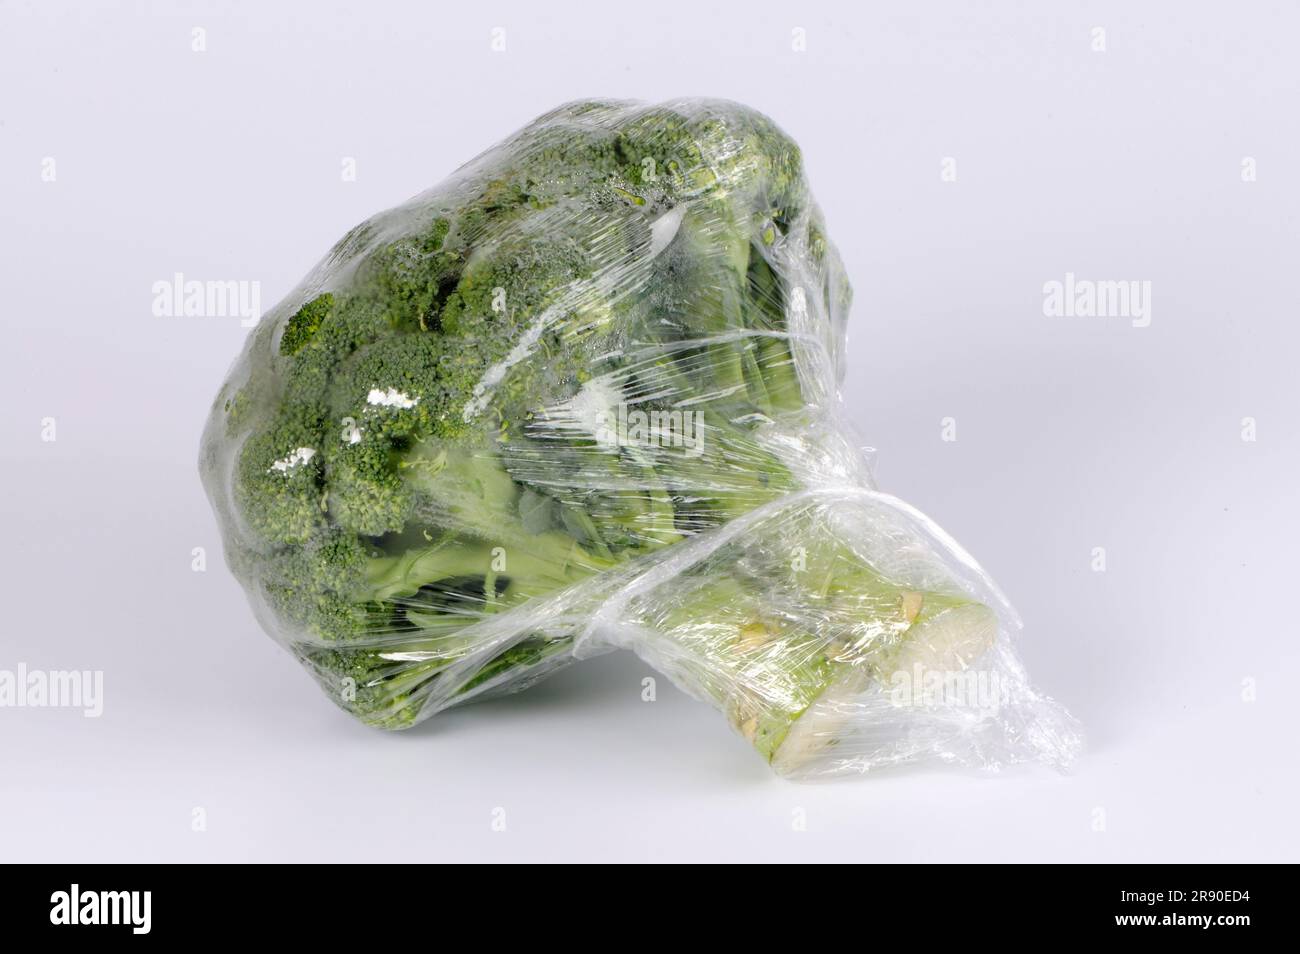 Broccoli (Brassica oleracea var. italica) in plastic film, foil, plastic wrap Stock Photo